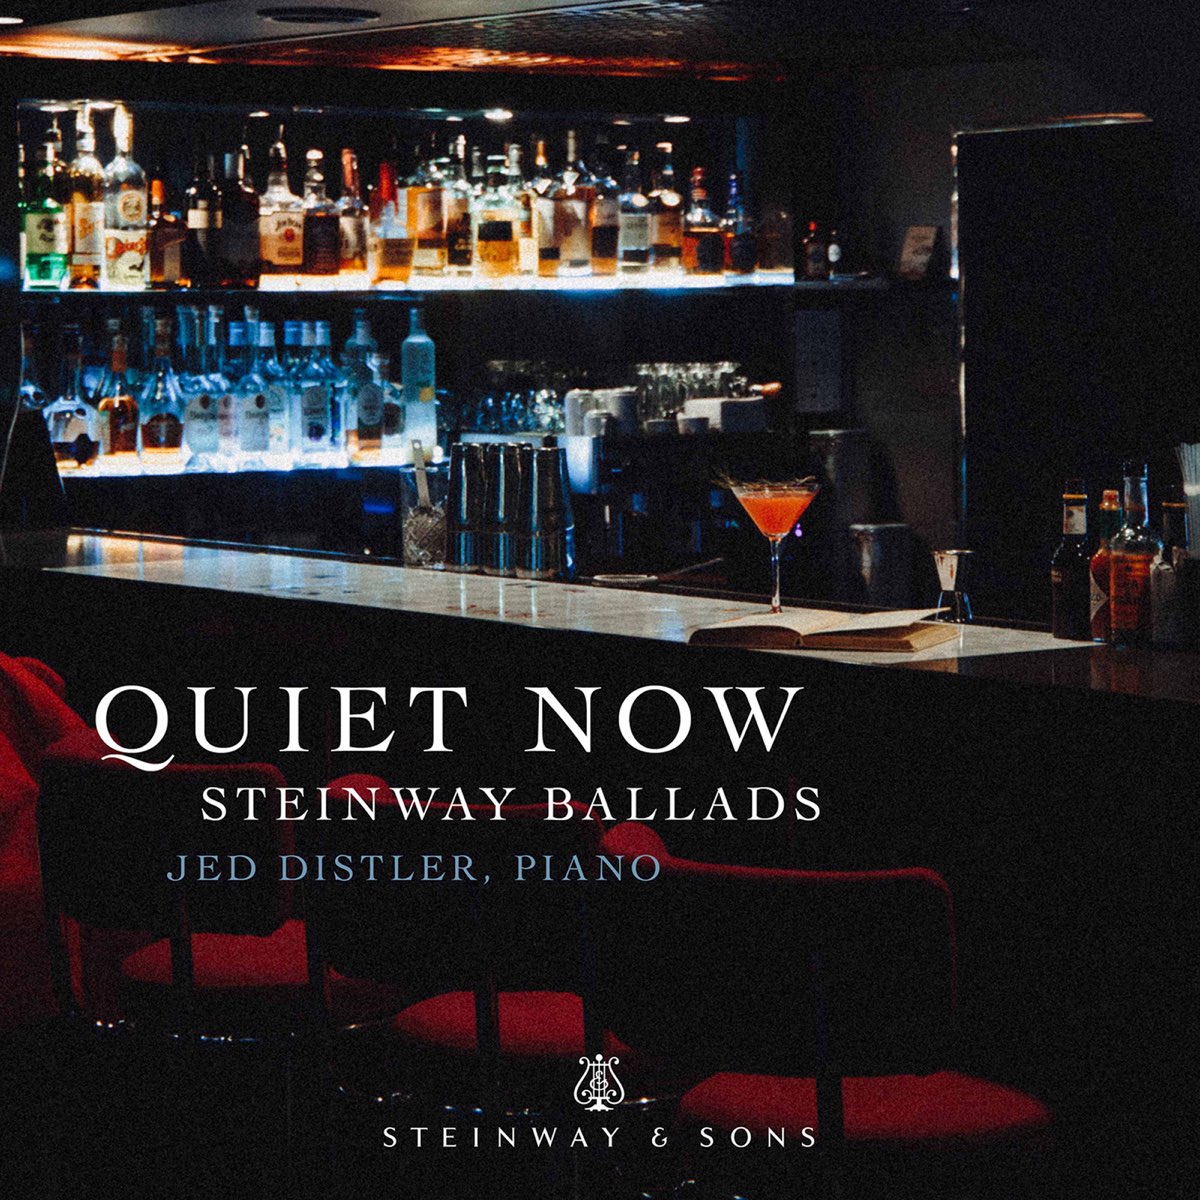 Shaken not Stirred. Lounge background. Shaken not Stirred 1968 photo. Quiet now